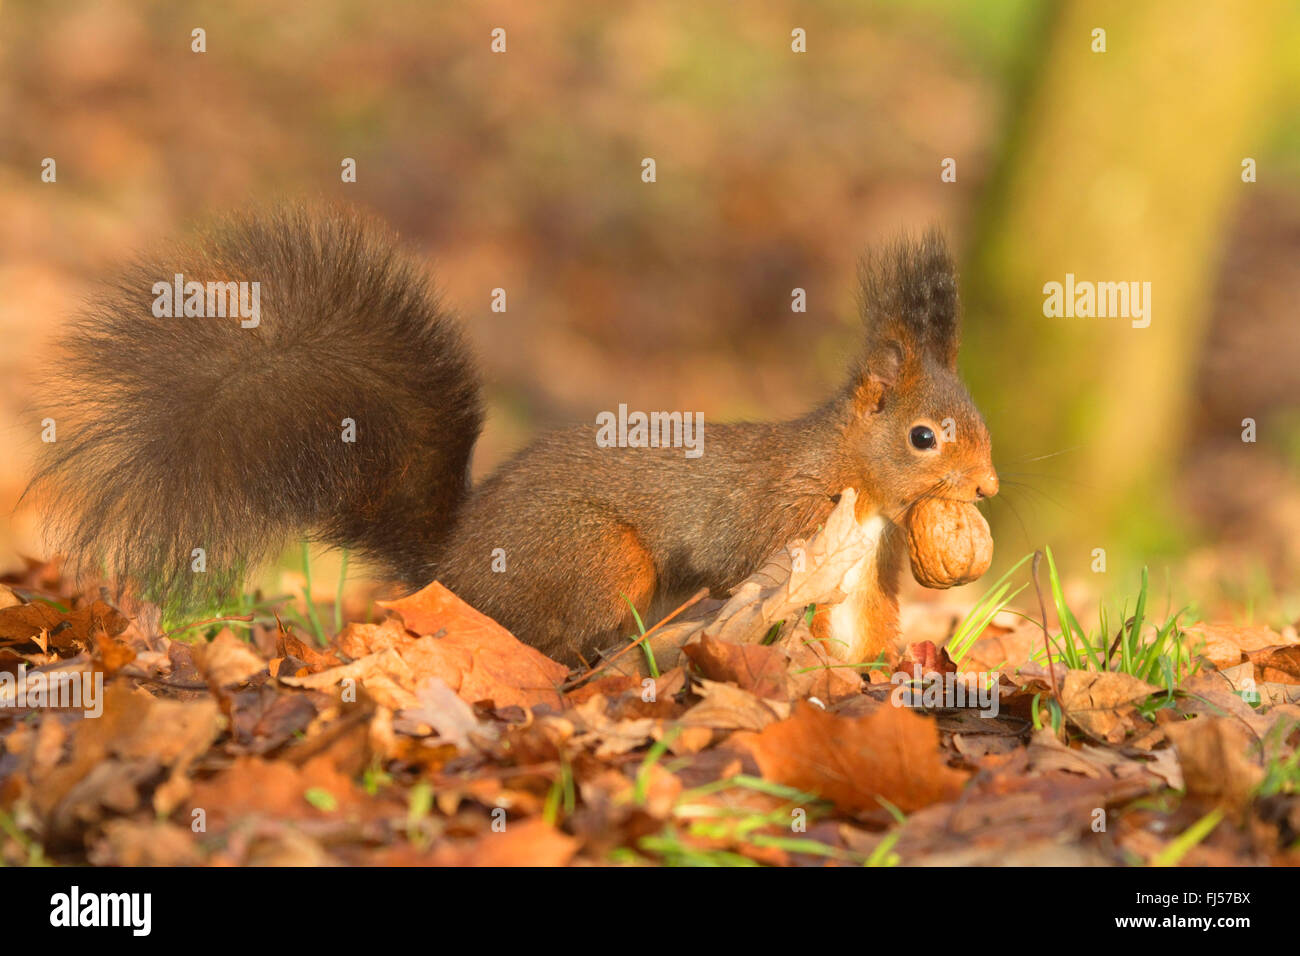 Europäische Eichhörnchen, eurasische Eichhörnchen (Sciurus Vulgaris), mit Walnuss im Mund im späten Herbst, Seitenansicht, Deutschland Stockfoto